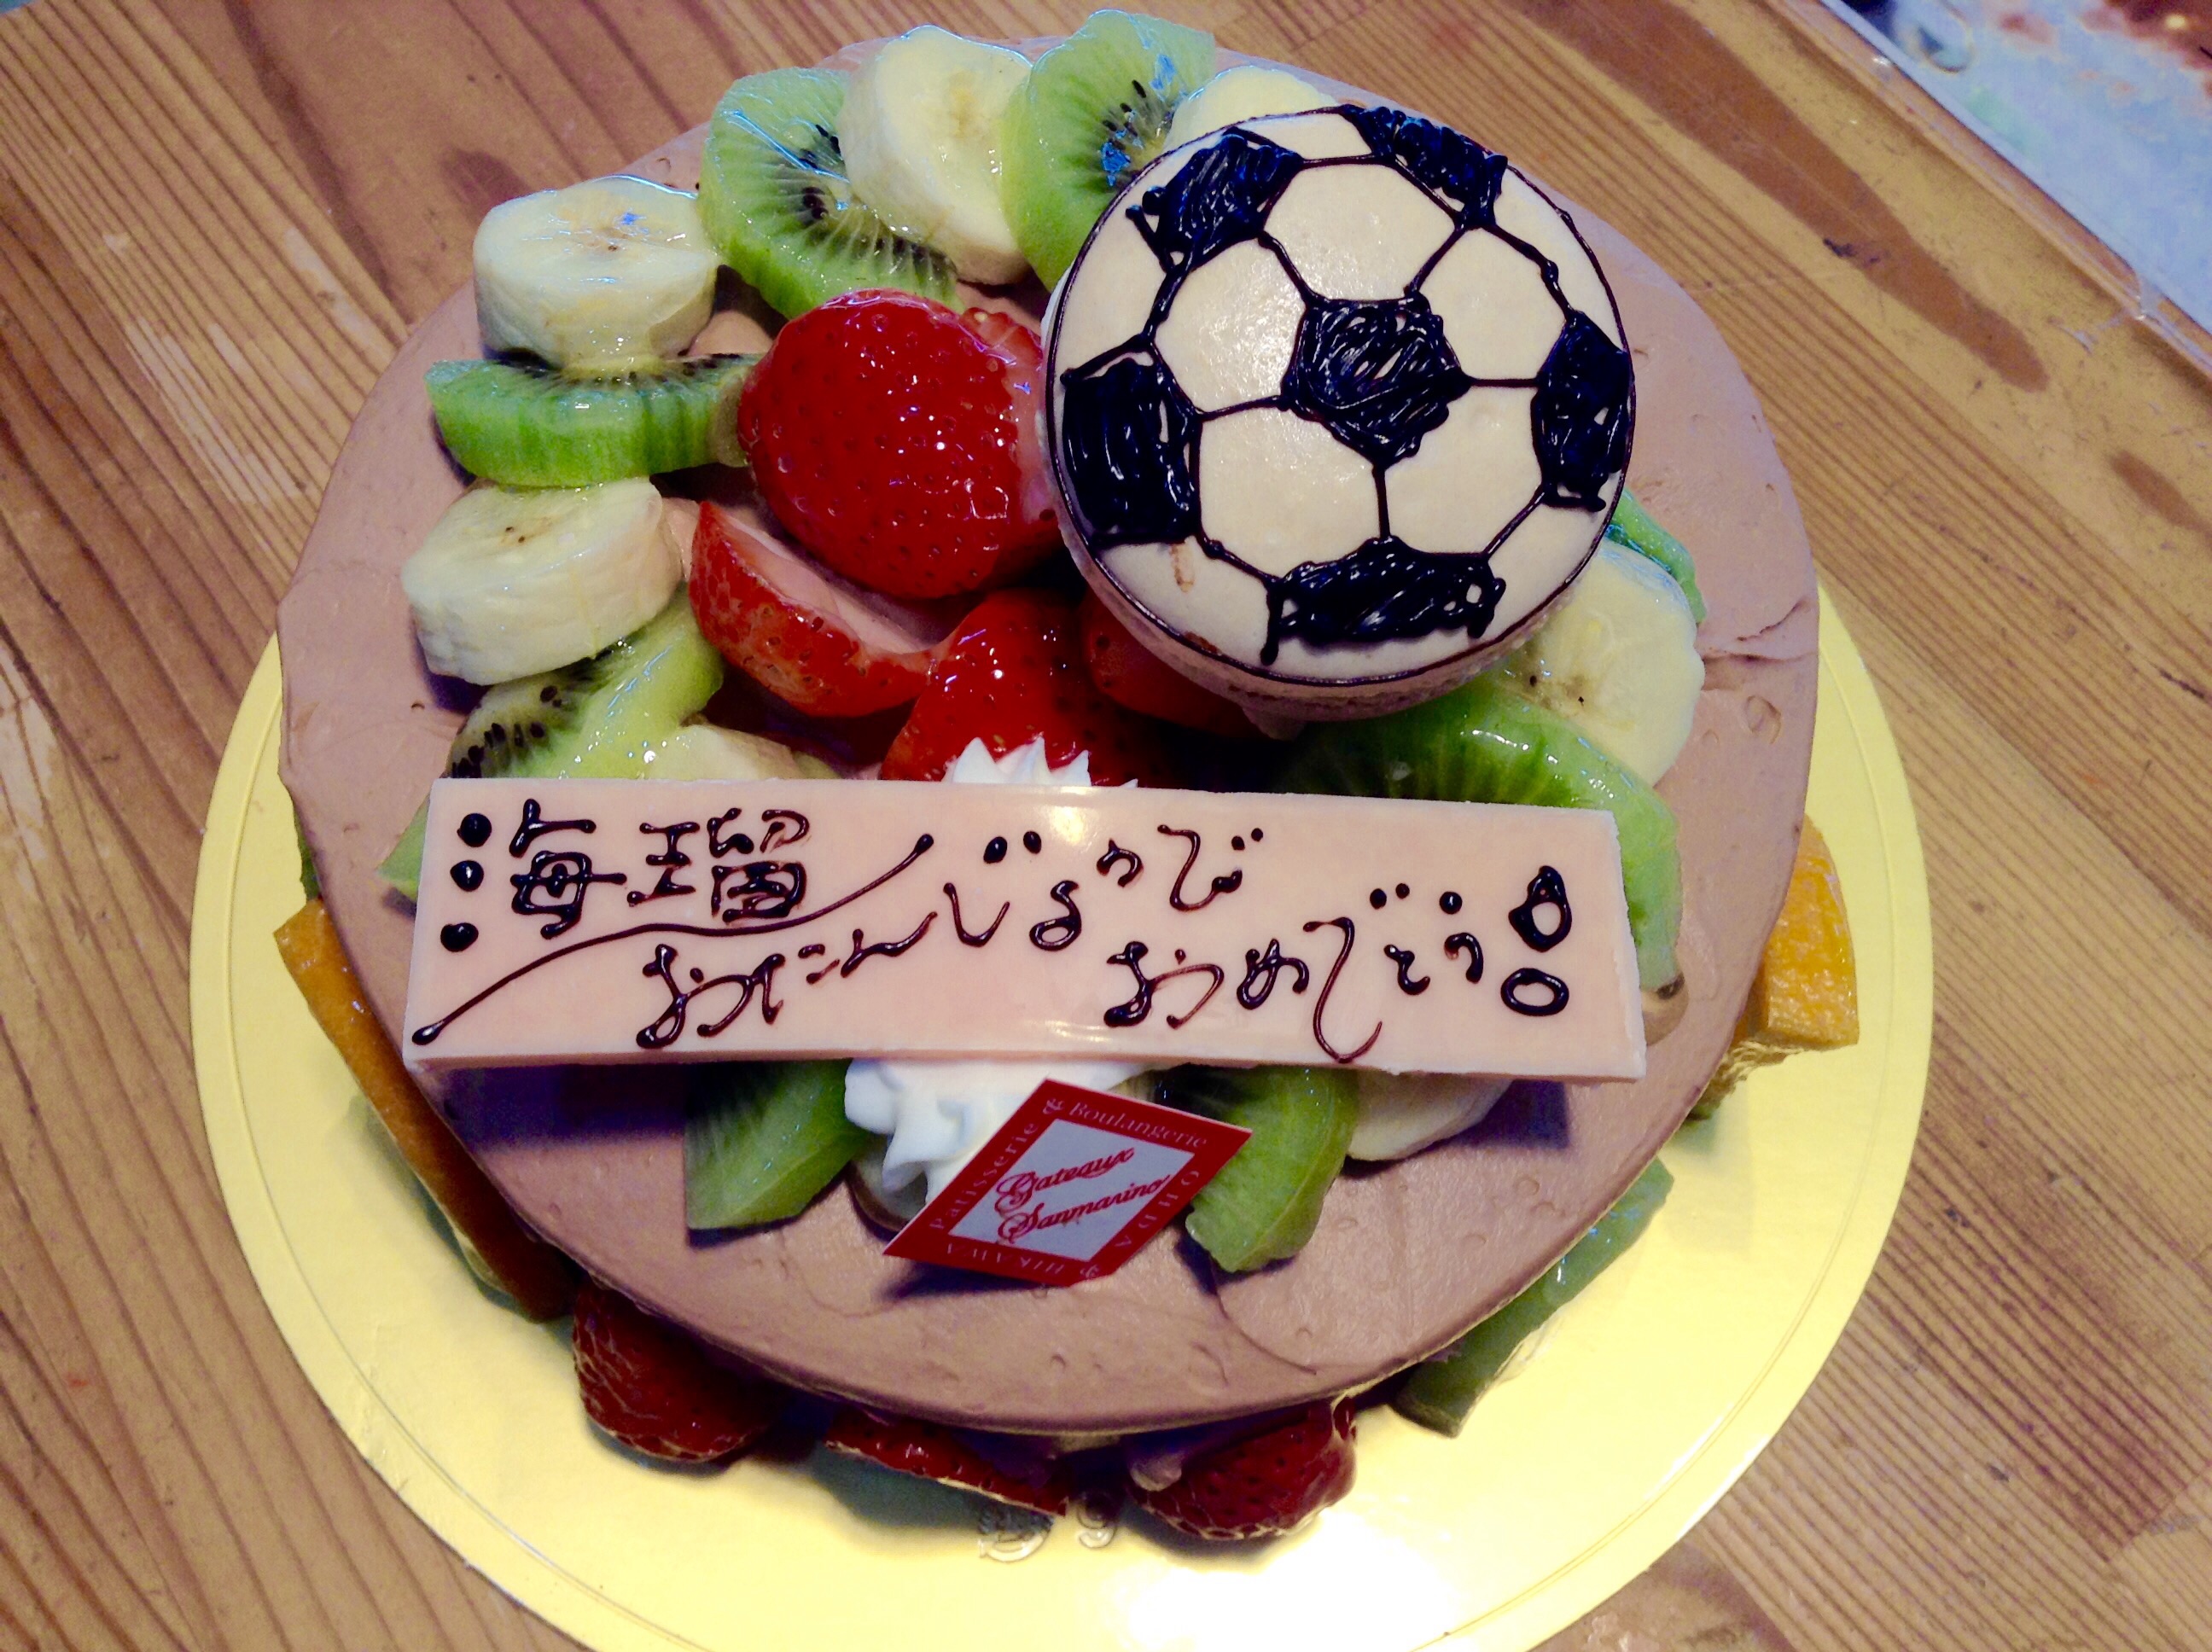 サッカー少年のバースデーケーキです ガトサン ブログ